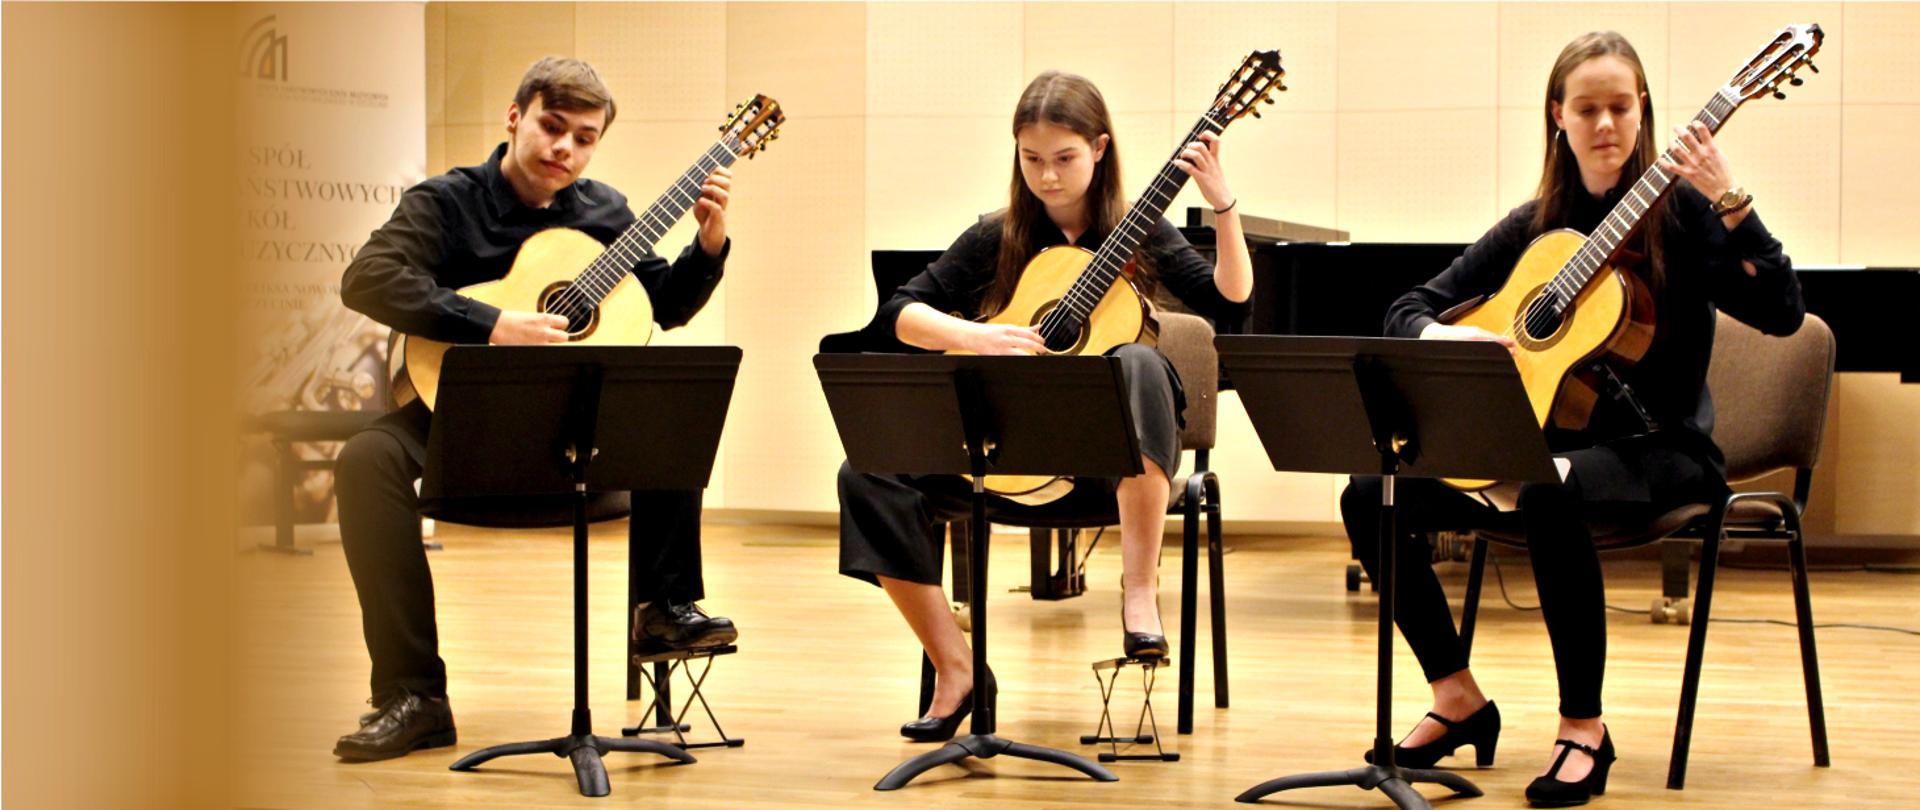 Zdjęcie przestawia trzech uczniów ZPSM grających w sali koncertowej na gitarach